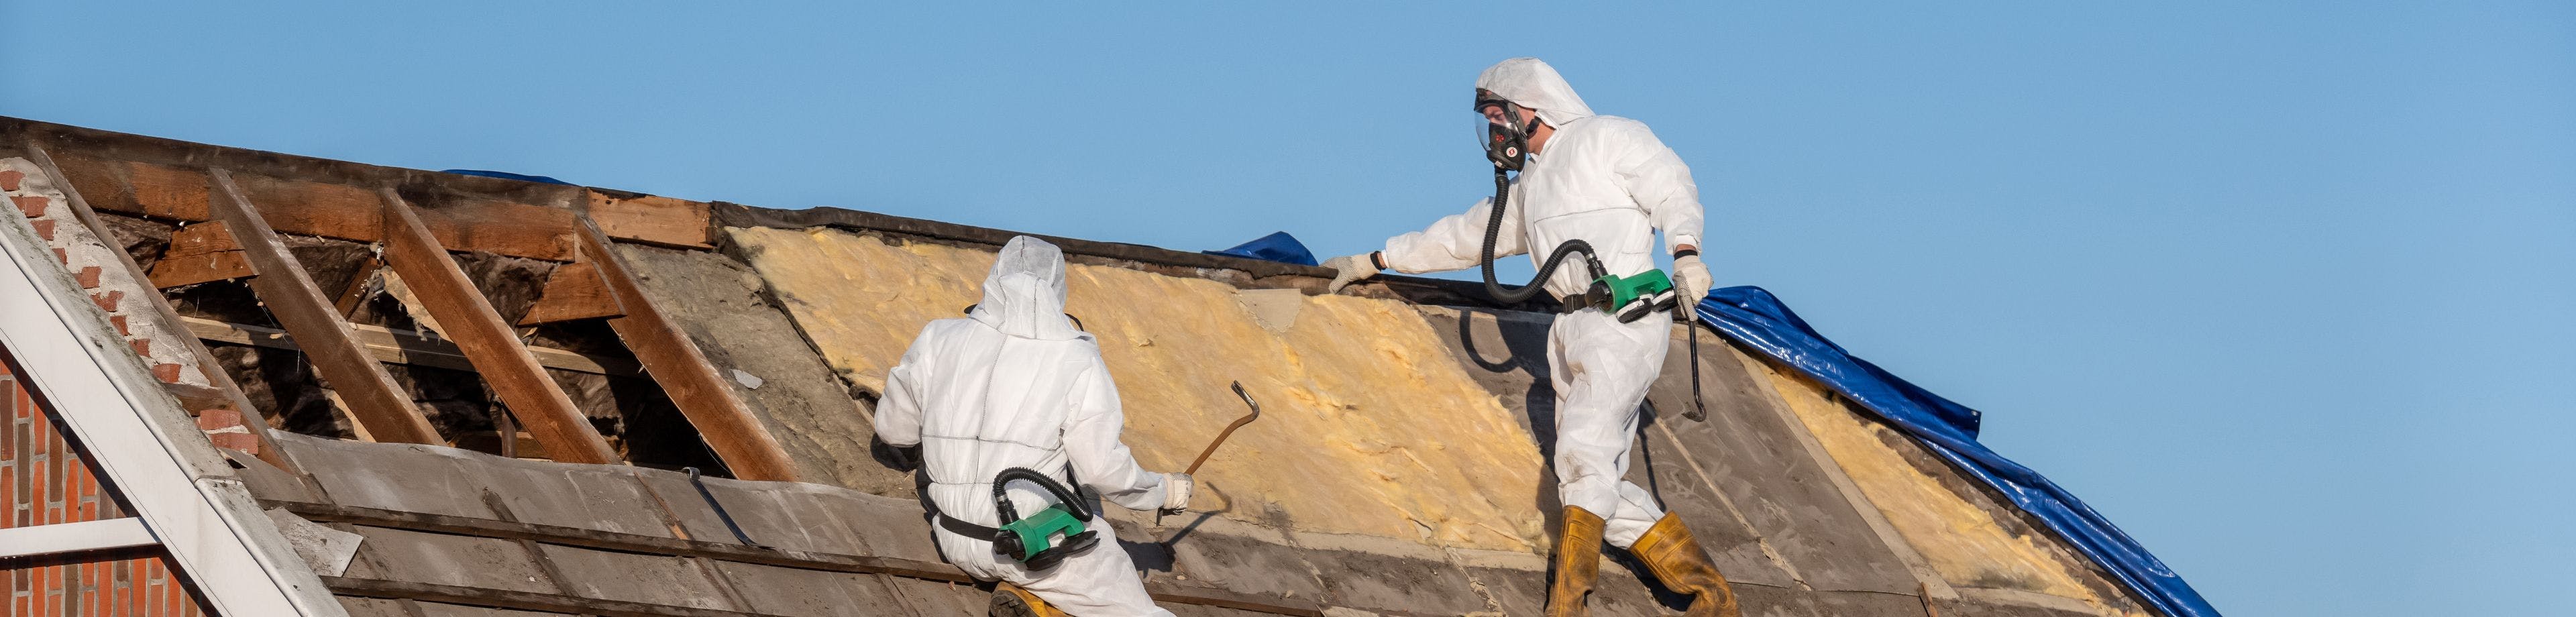 Mannen in witte pakken saneren een dak waarin asbest is verwerkt.